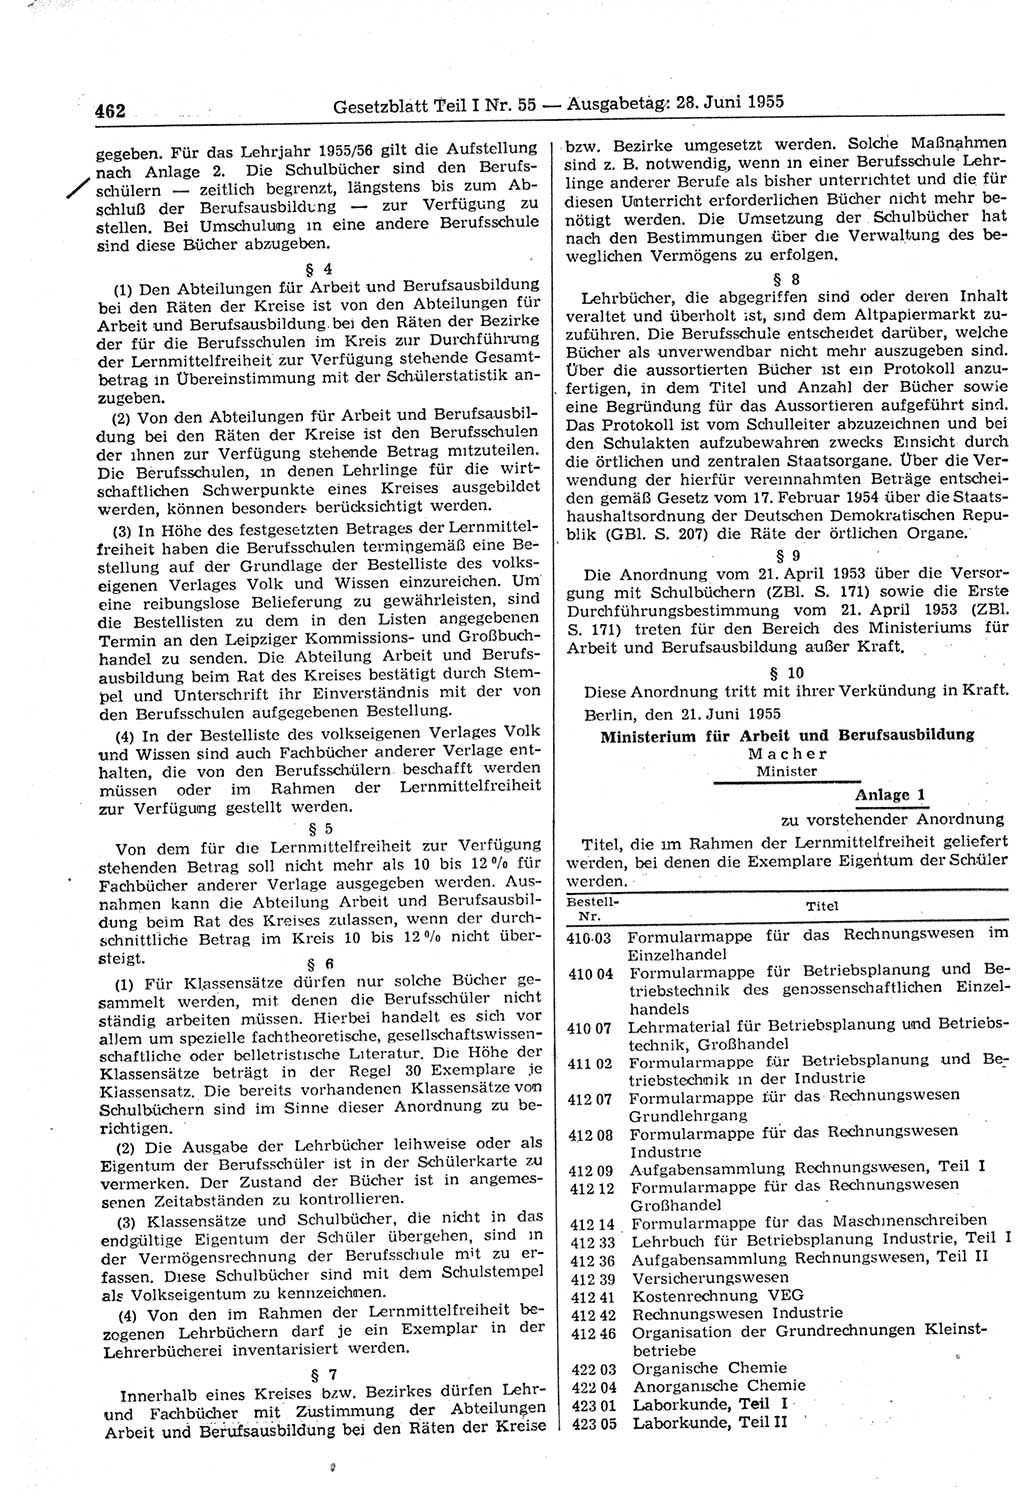 Gesetzblatt (GBl.) der Deutschen Demokratischen Republik (DDR) Teil Ⅰ 1955, Seite 462 (GBl. DDR Ⅰ 1955, S. 462)